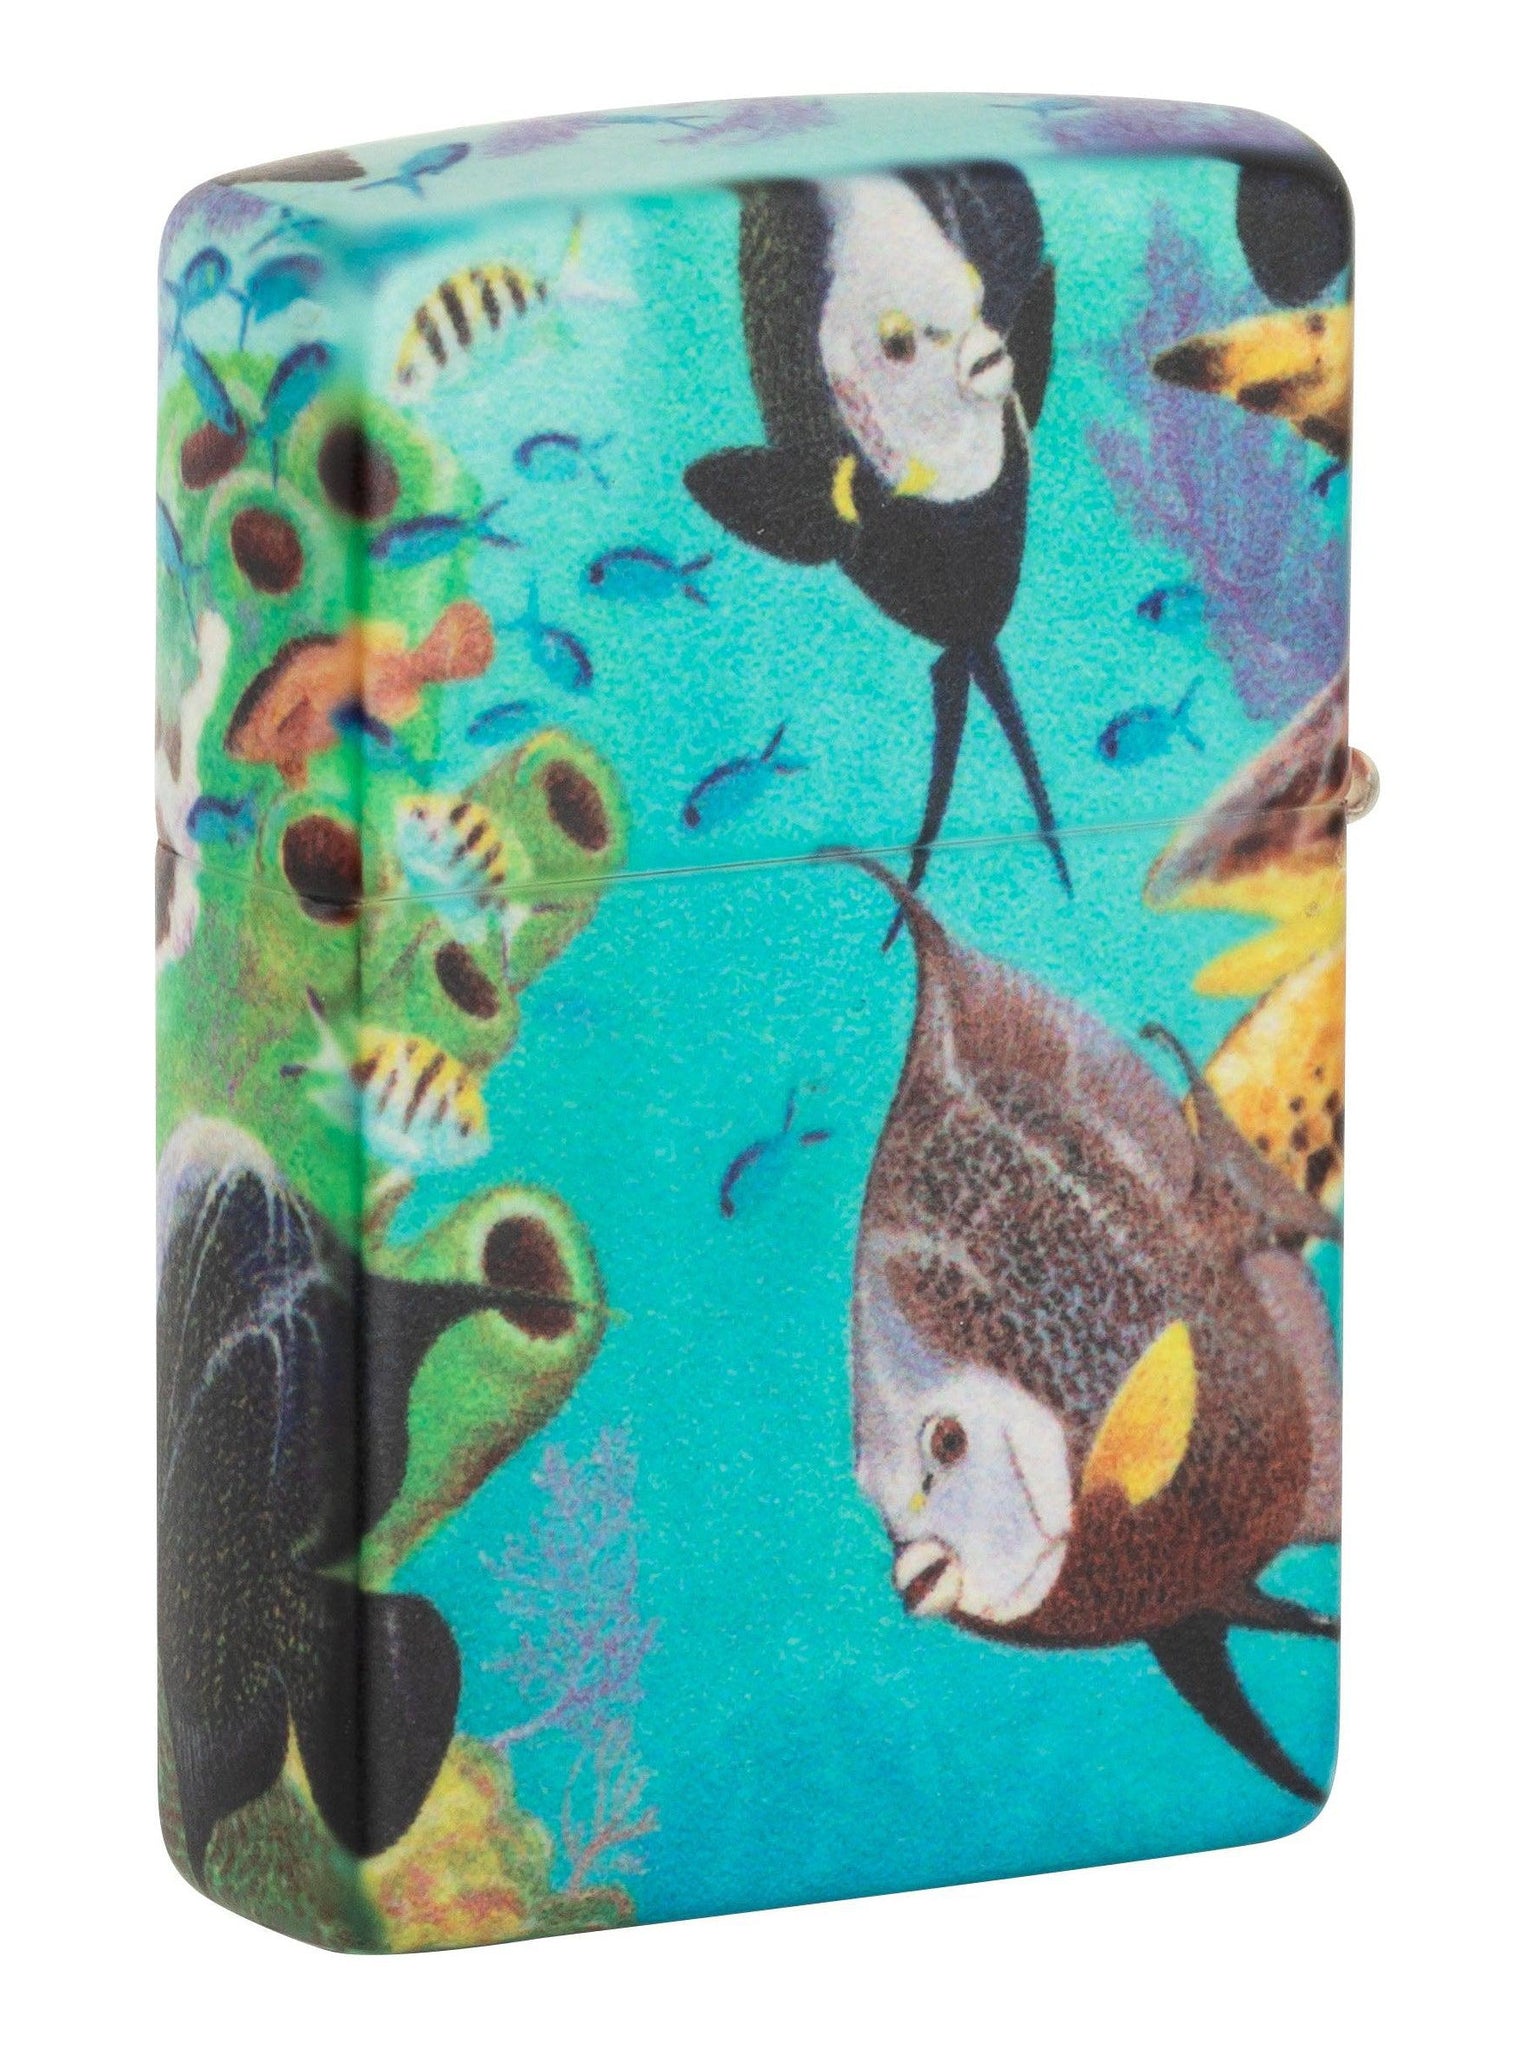 Zippo Lighter: Ocean Scene by Guy Harvey, 540 Color - Glow in the Dark 49819